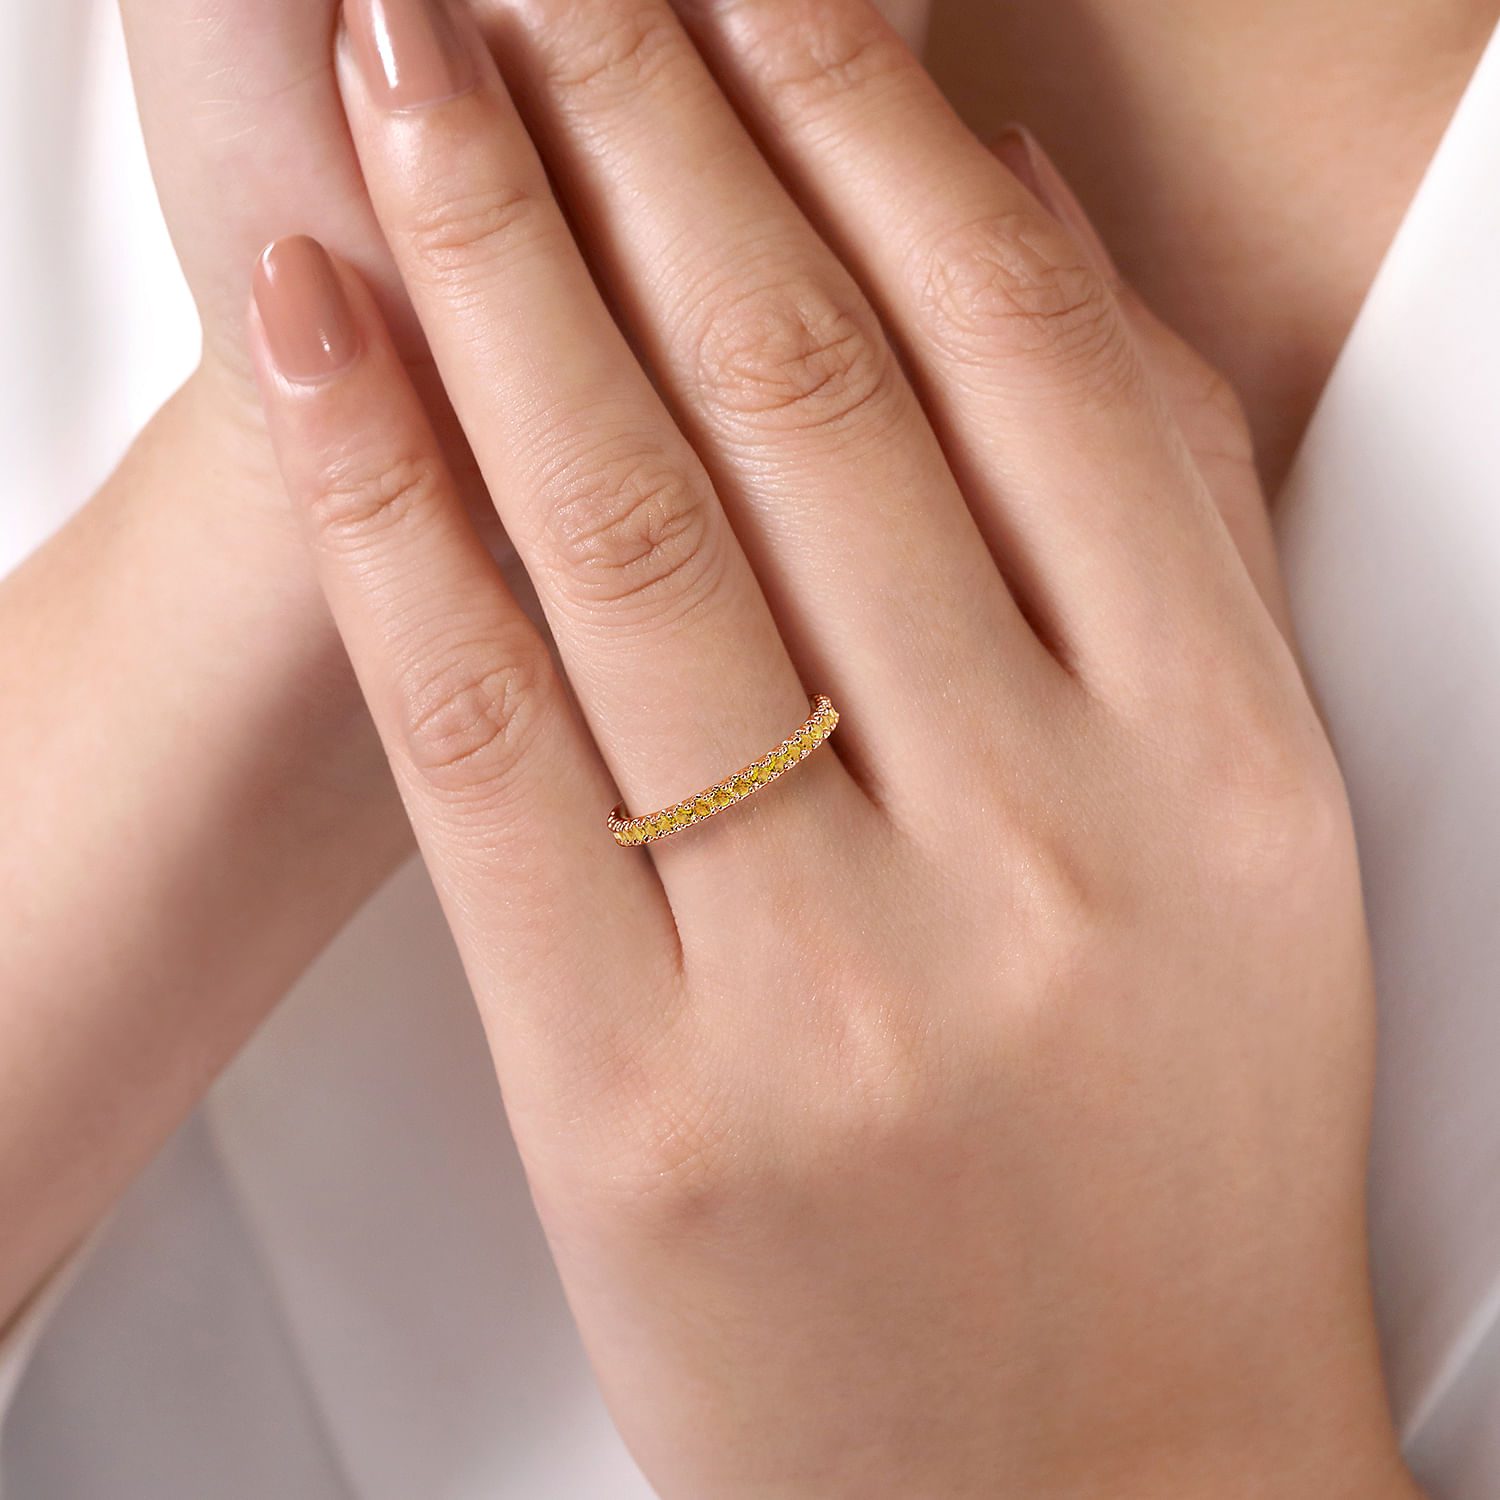 14K Rose Gold Citrine Stackable Ring